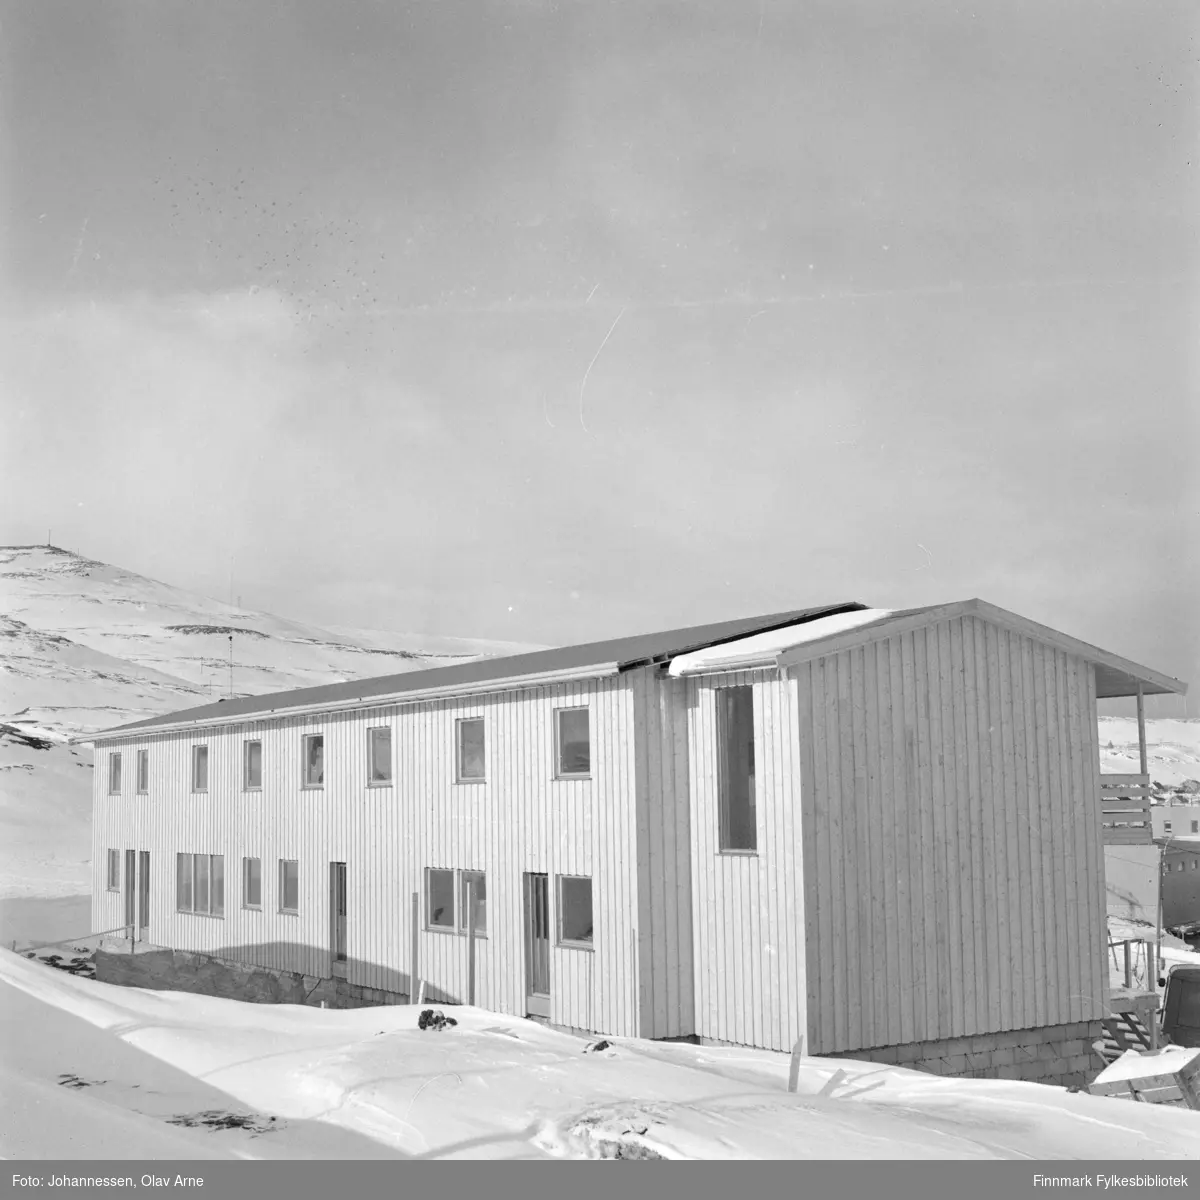 Nederste rekkebygget tilhørende Sildoljefabrikken på Lieholmen i Båtsfjord, Finnmark

Foto trolig tatt på tidlig 1970-tallet
